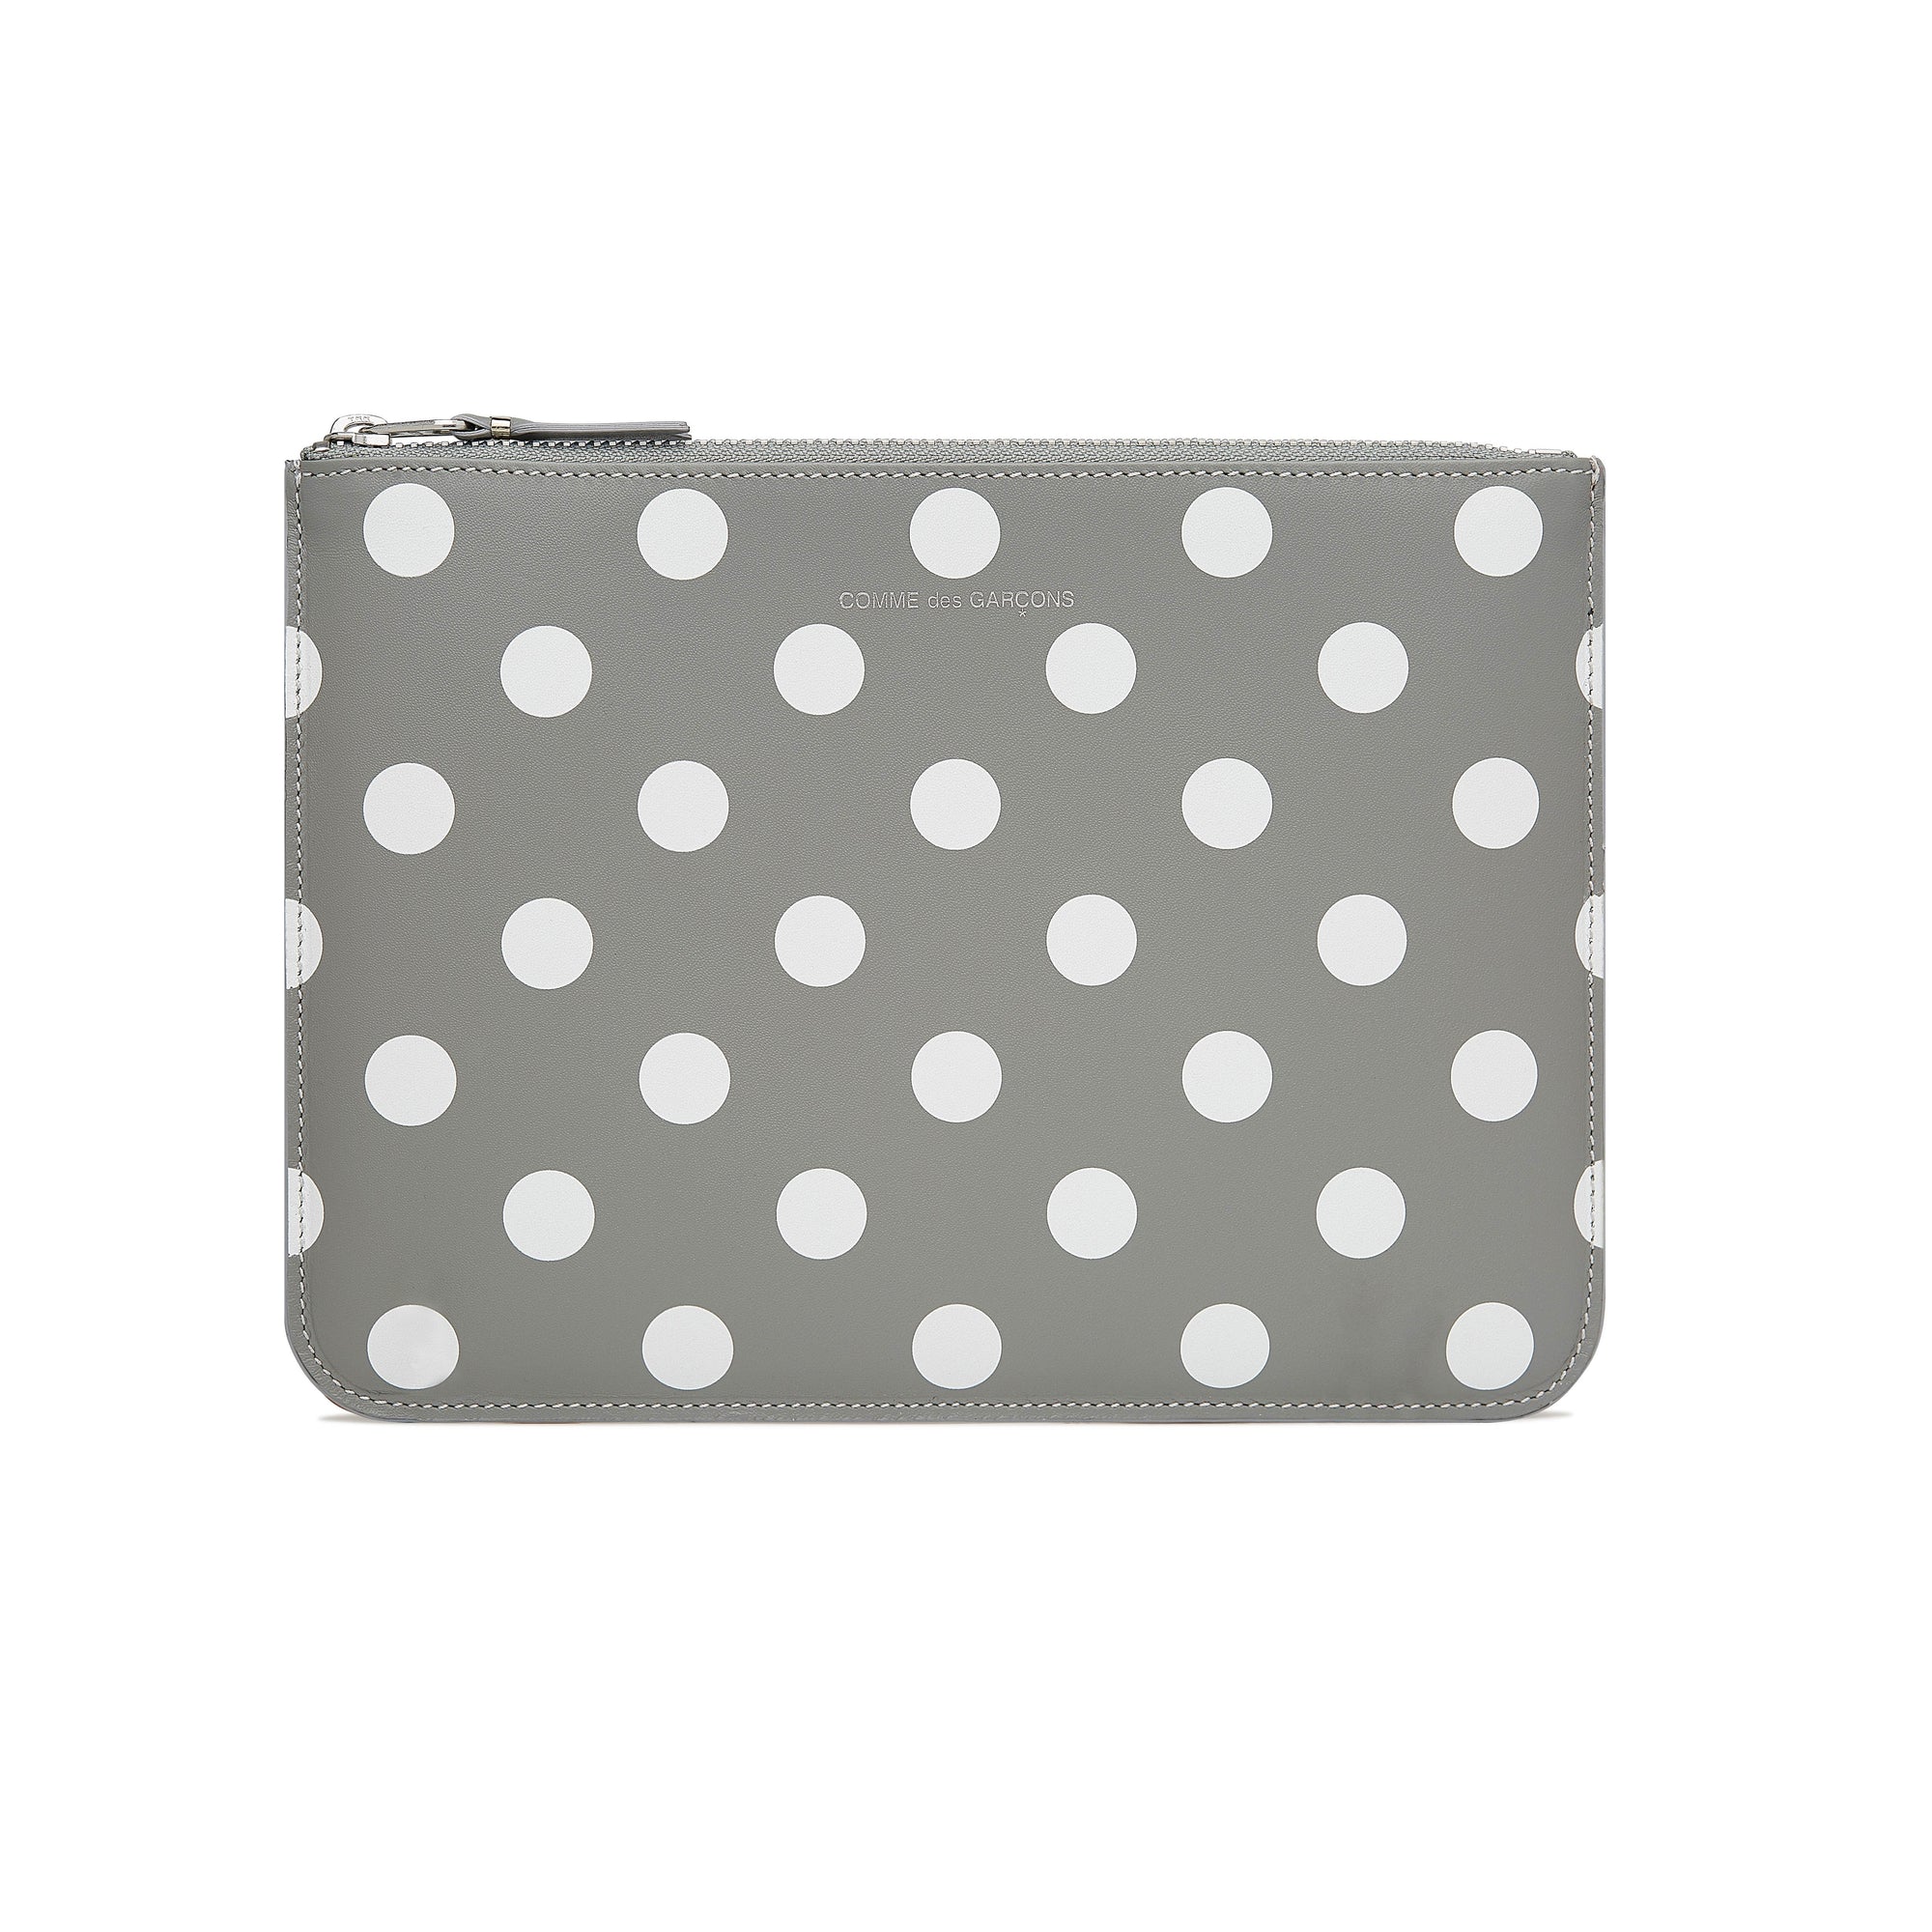 CDG WALLET - Polka Dots Printed - (SA5100PD Grey) view 1